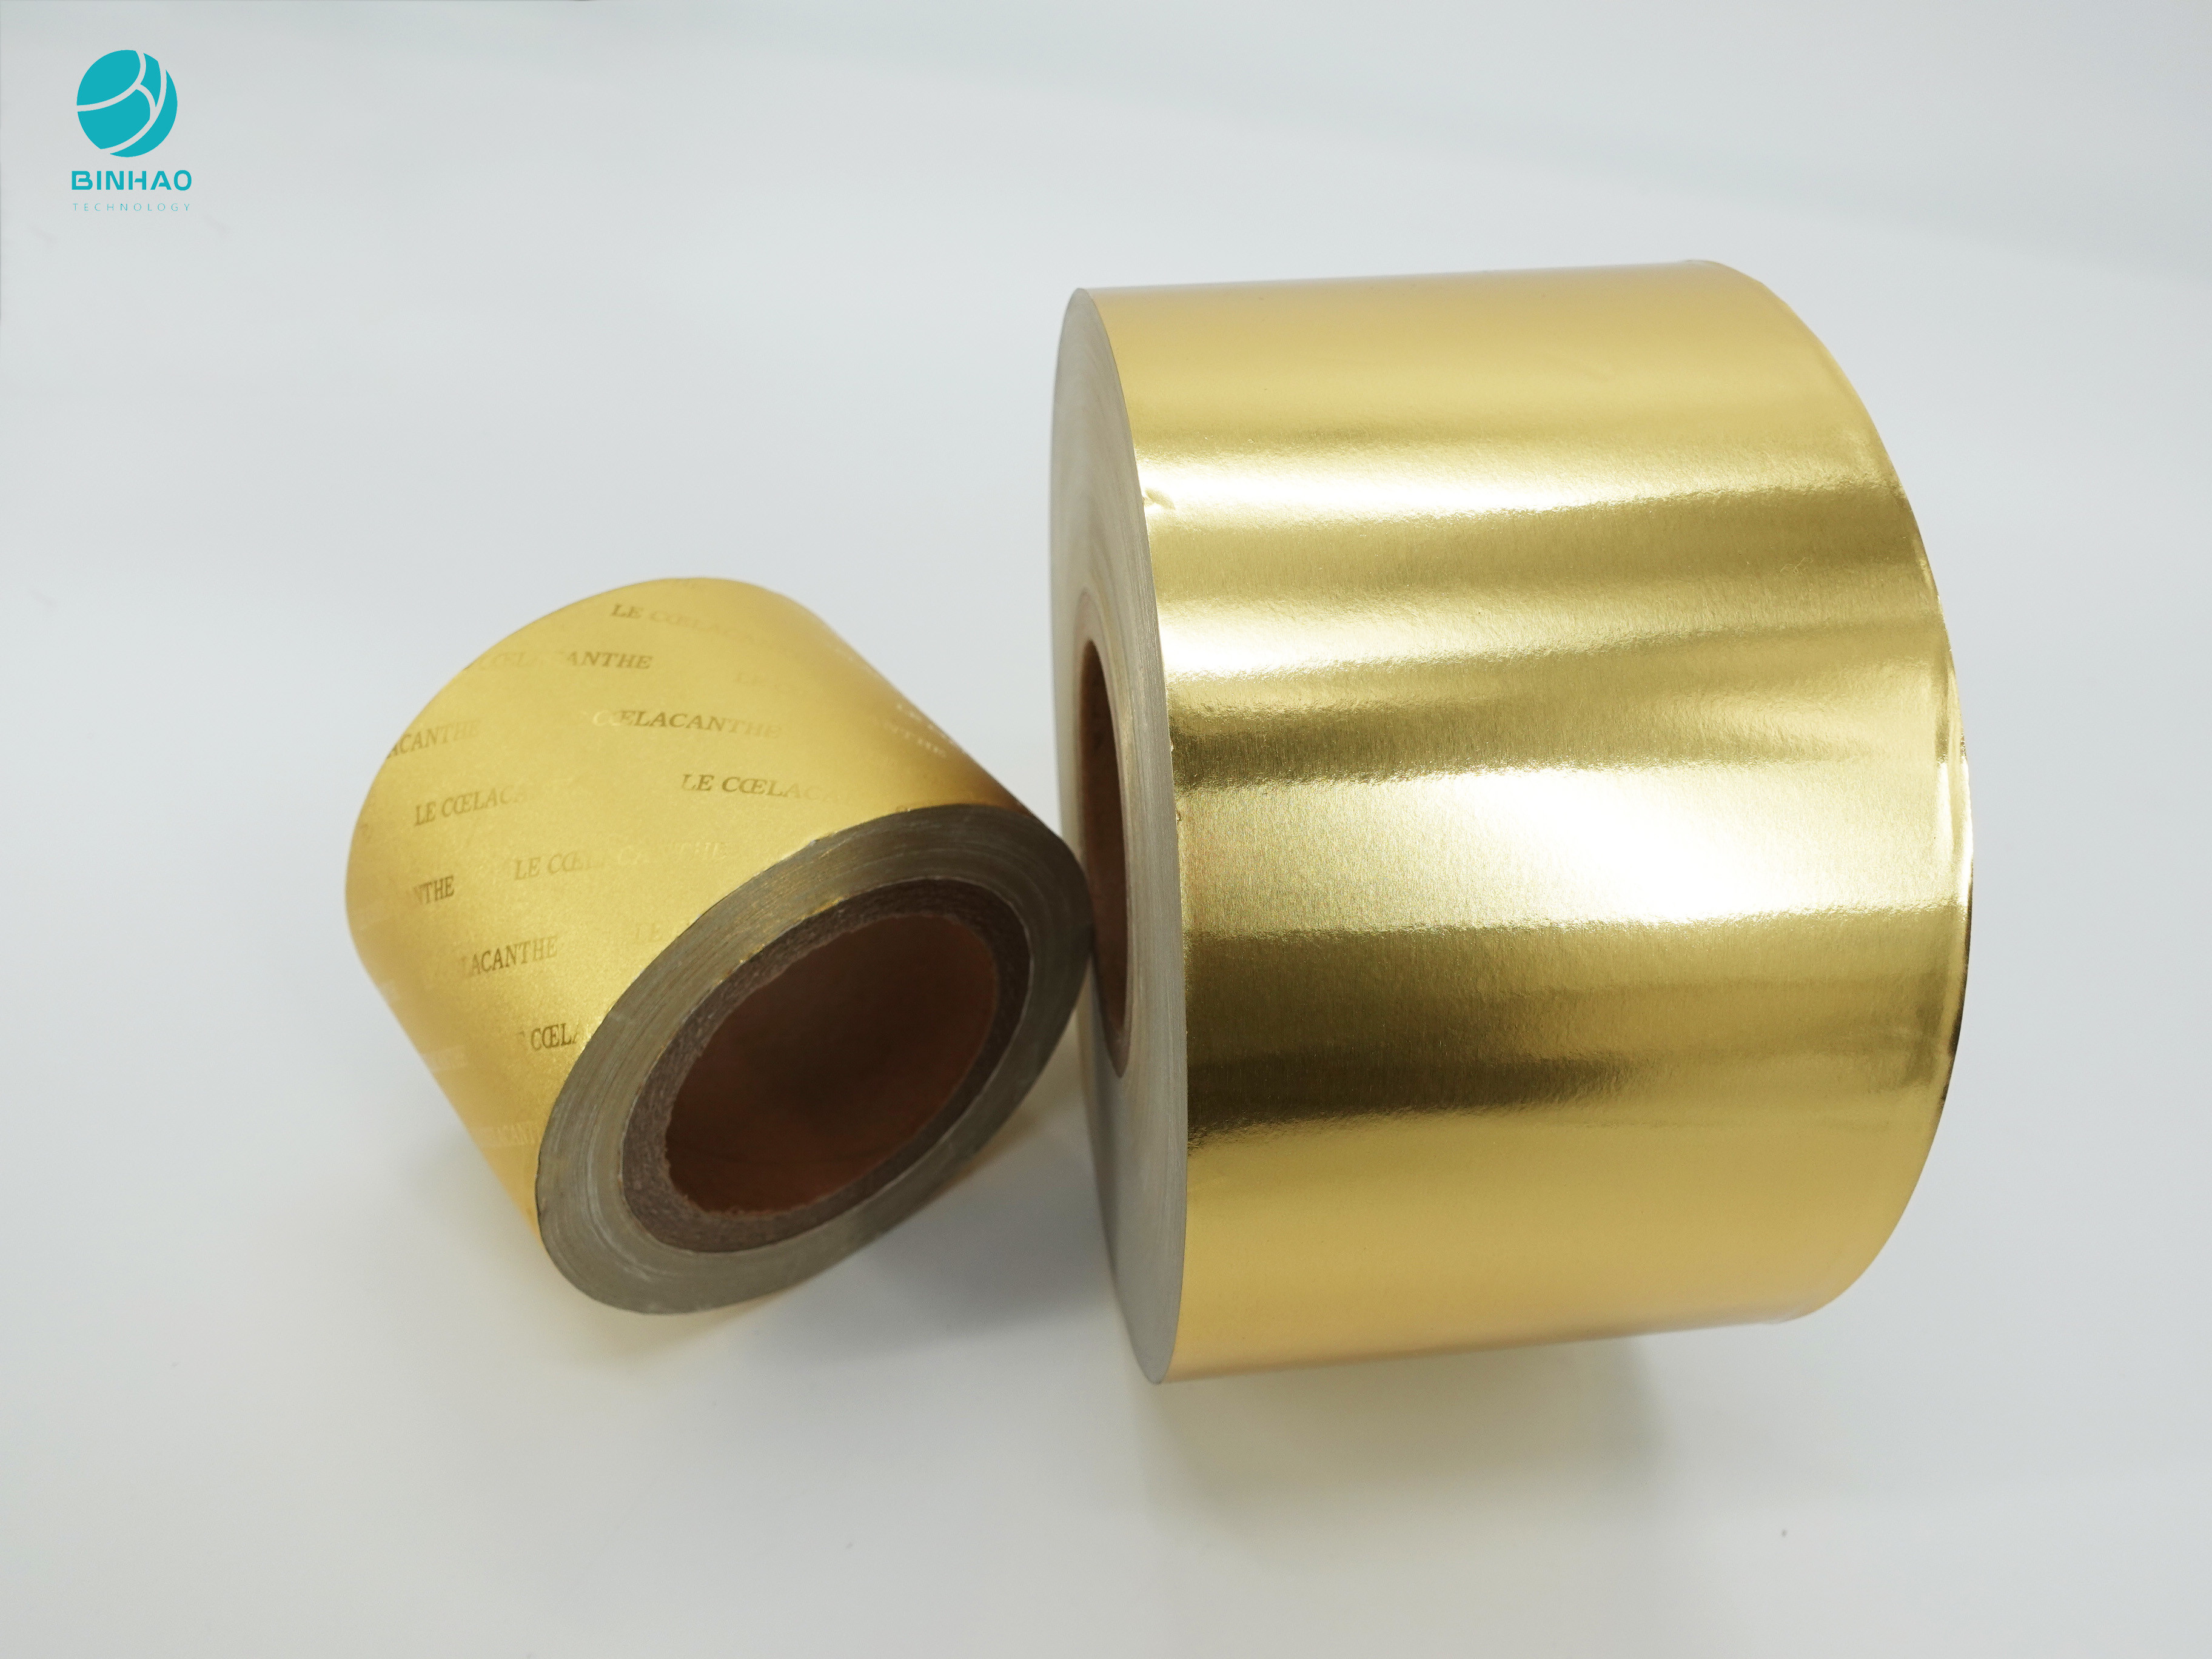 Σύνθετο 83mm χρυσό έγγραφο φύλλων αλουμινίου αλουμινίου cOem για τη συσκευασία καπνών τσιγάρων